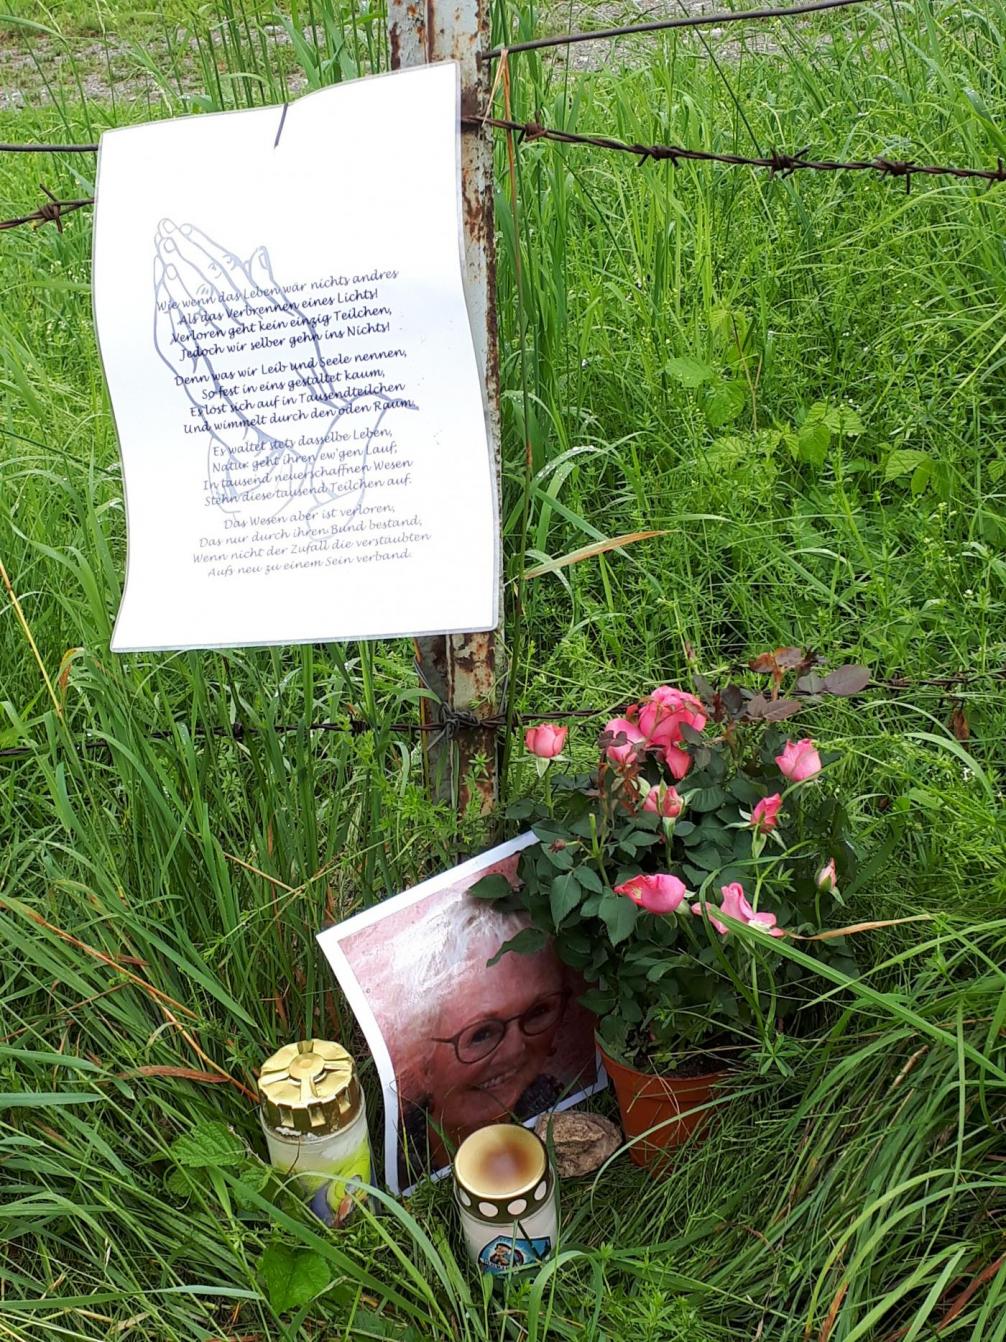 Unfallort von Christine Siess, Stacheldrahtzaun in Wiese mit A4 Zettel (gefaltete Hände und Text) Bild, Kerzen und Blumen